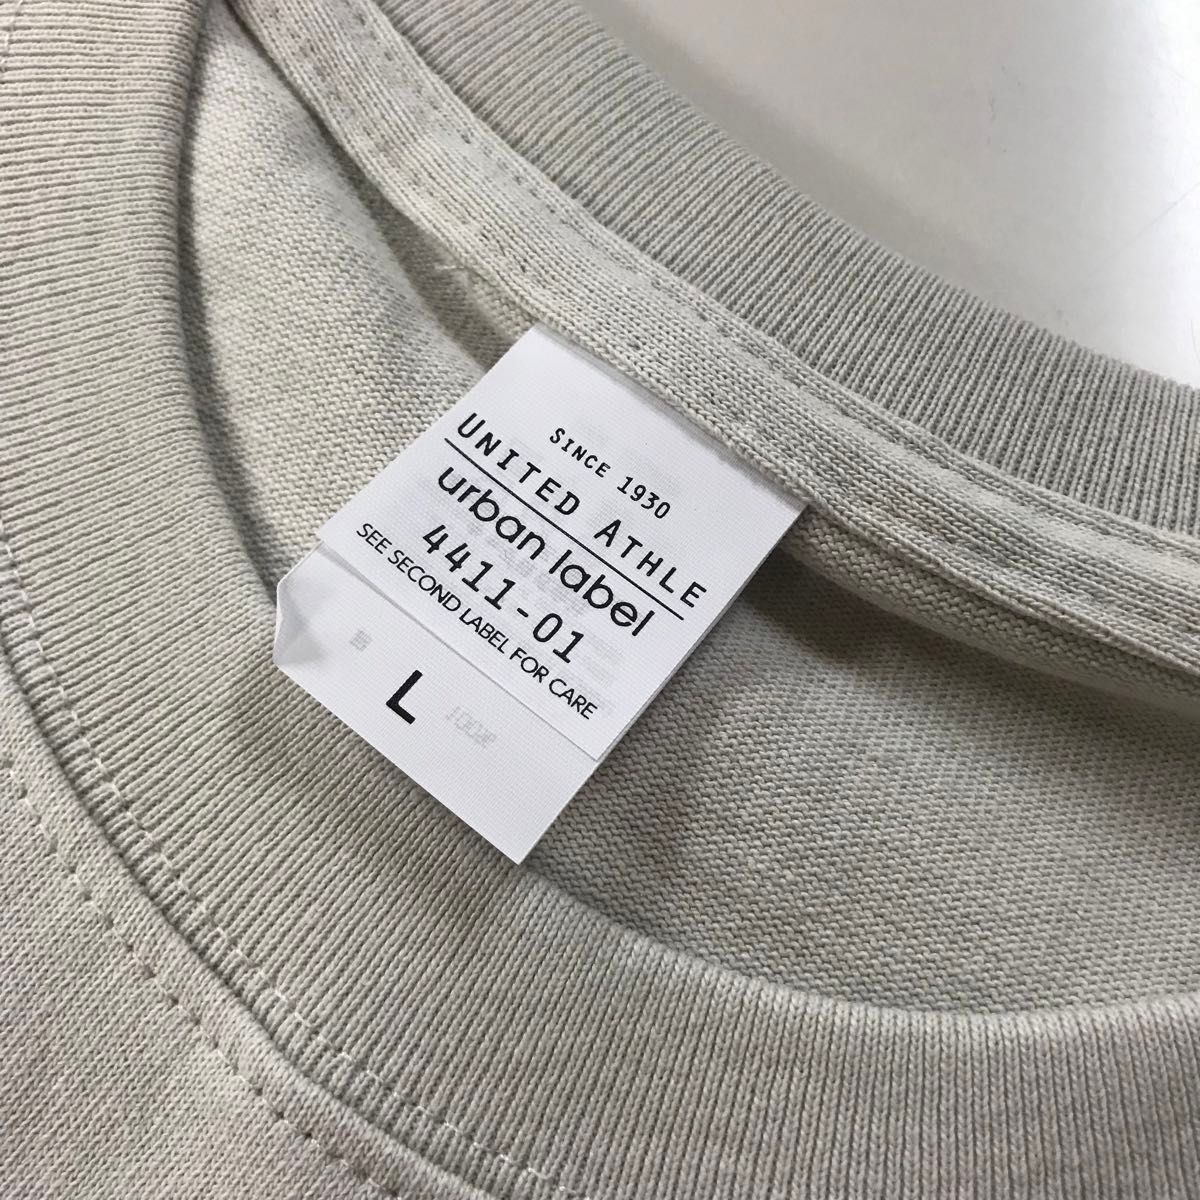 Tシャツ 半袖 マグマナムウエイト 9.1オンス【4411-01】L フロストグレー 綿100%